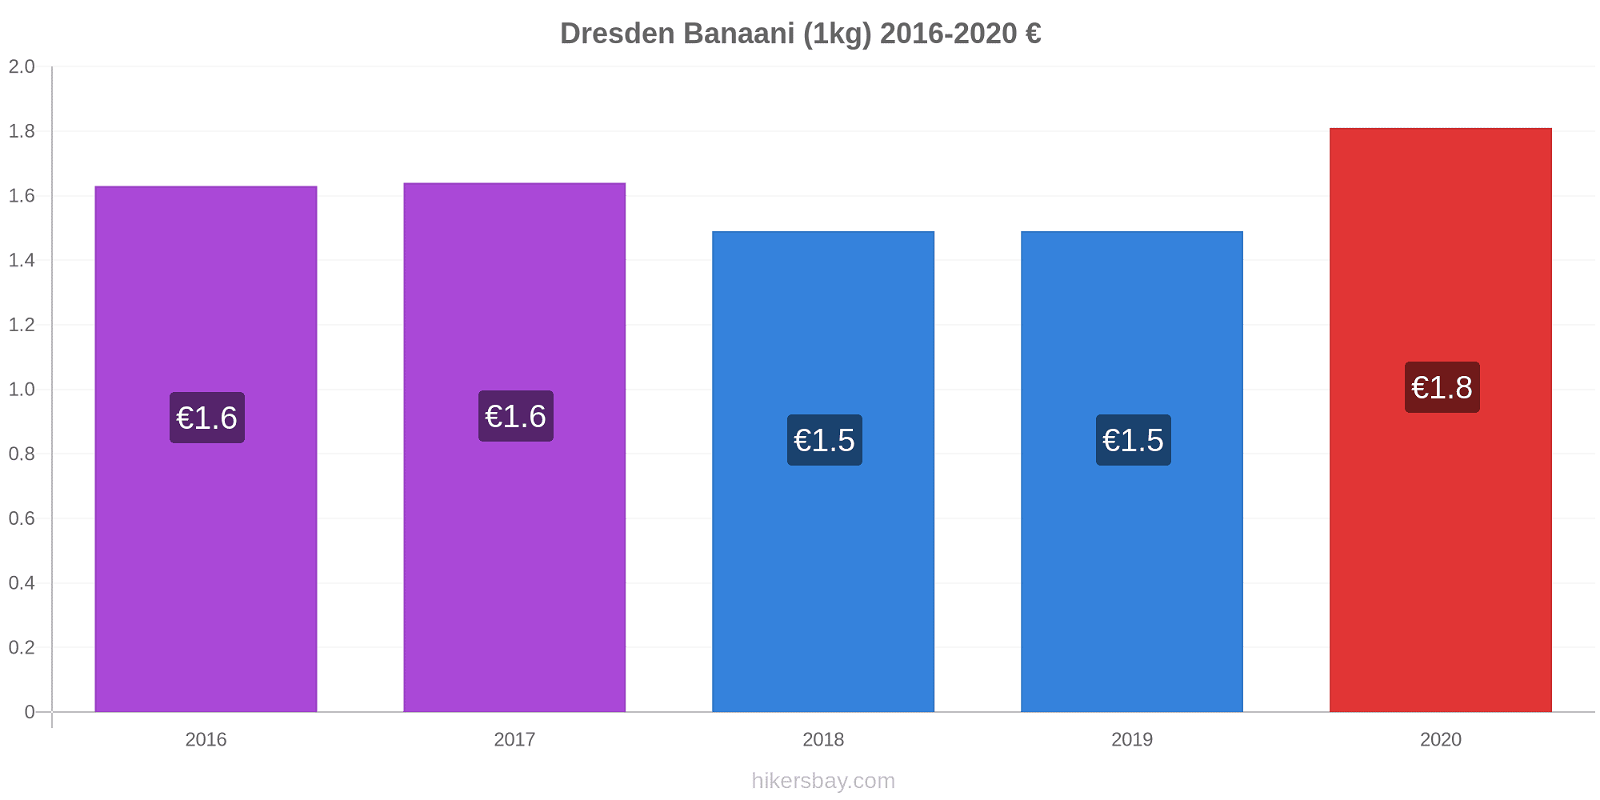 Dresden hintojen muutokset Banaani (1kg) hikersbay.com